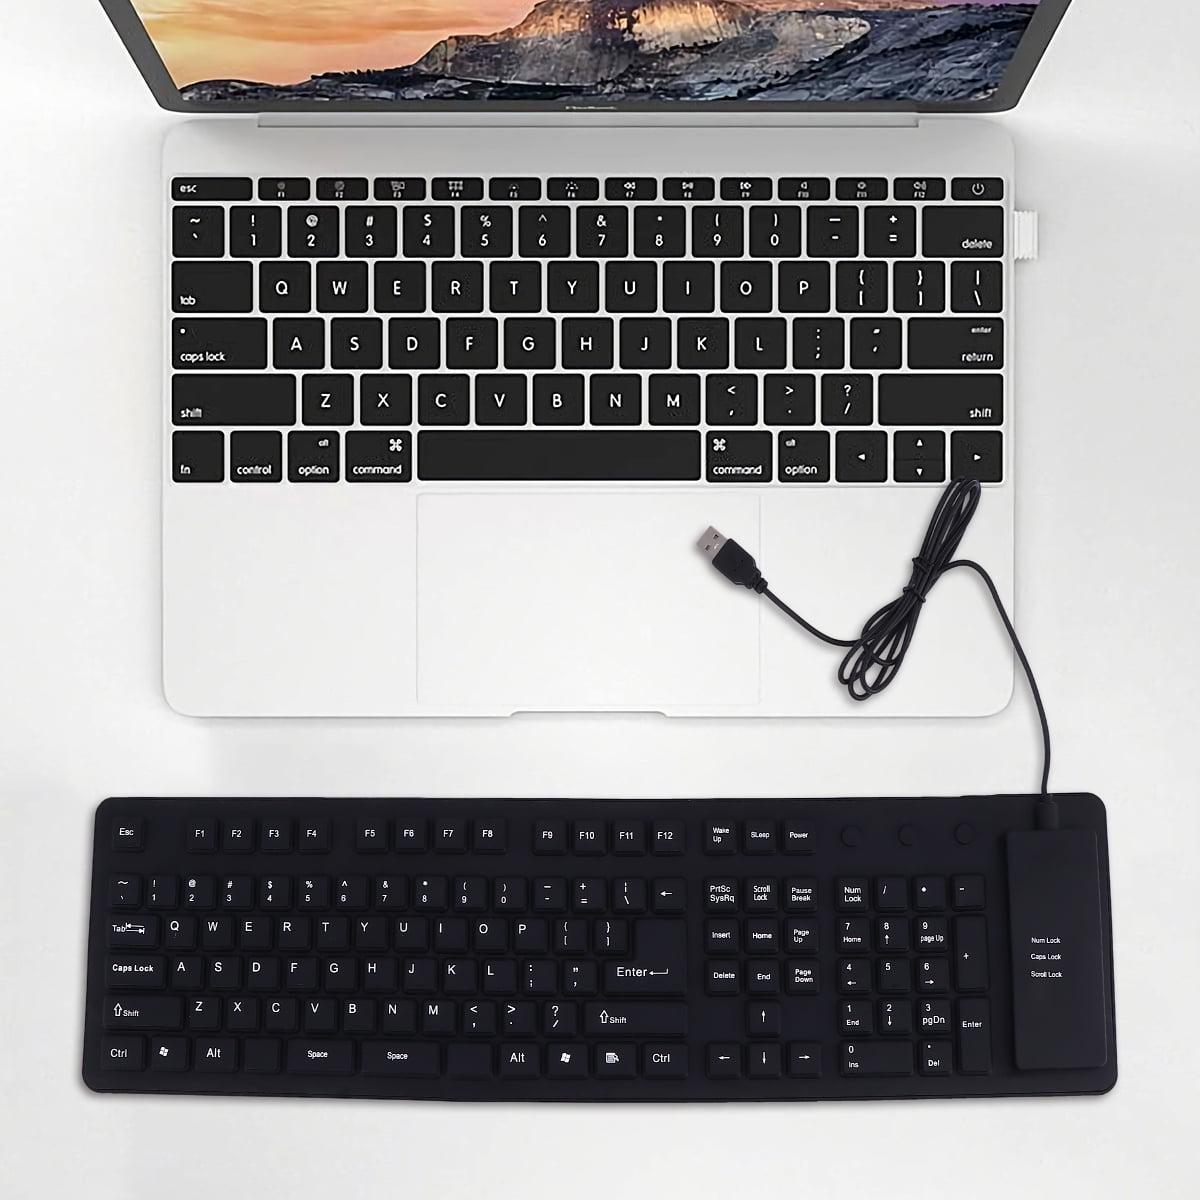 Roll-up-Tastatur-Computer, wasserdicht, 109 Tasten, geräuschlose USB-Tastatur mit Kabel